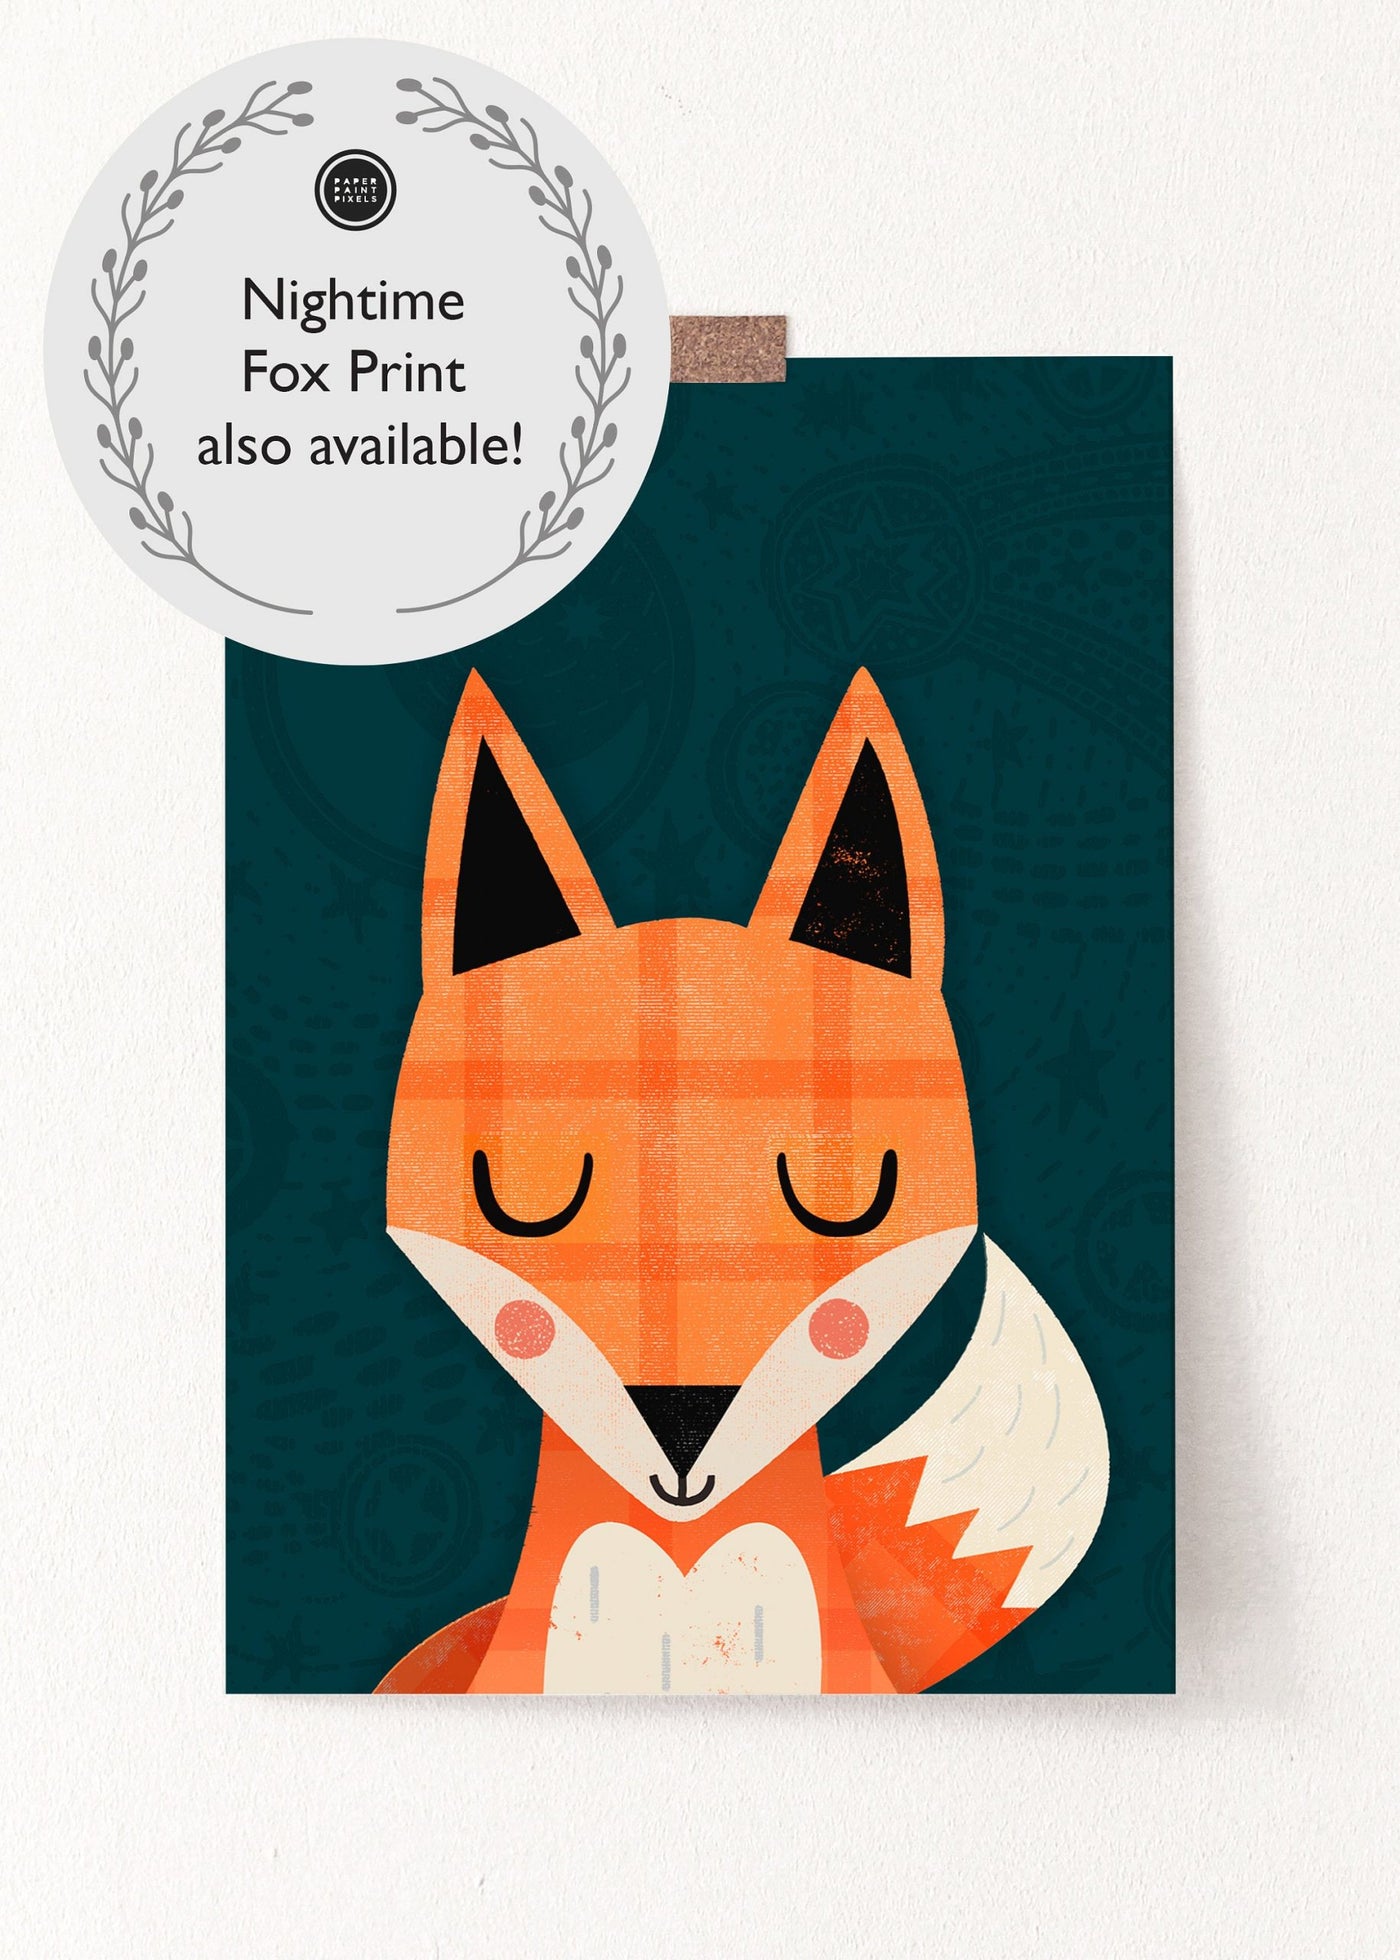 Woodland Fox Nursery Print - PaperPaintPixels